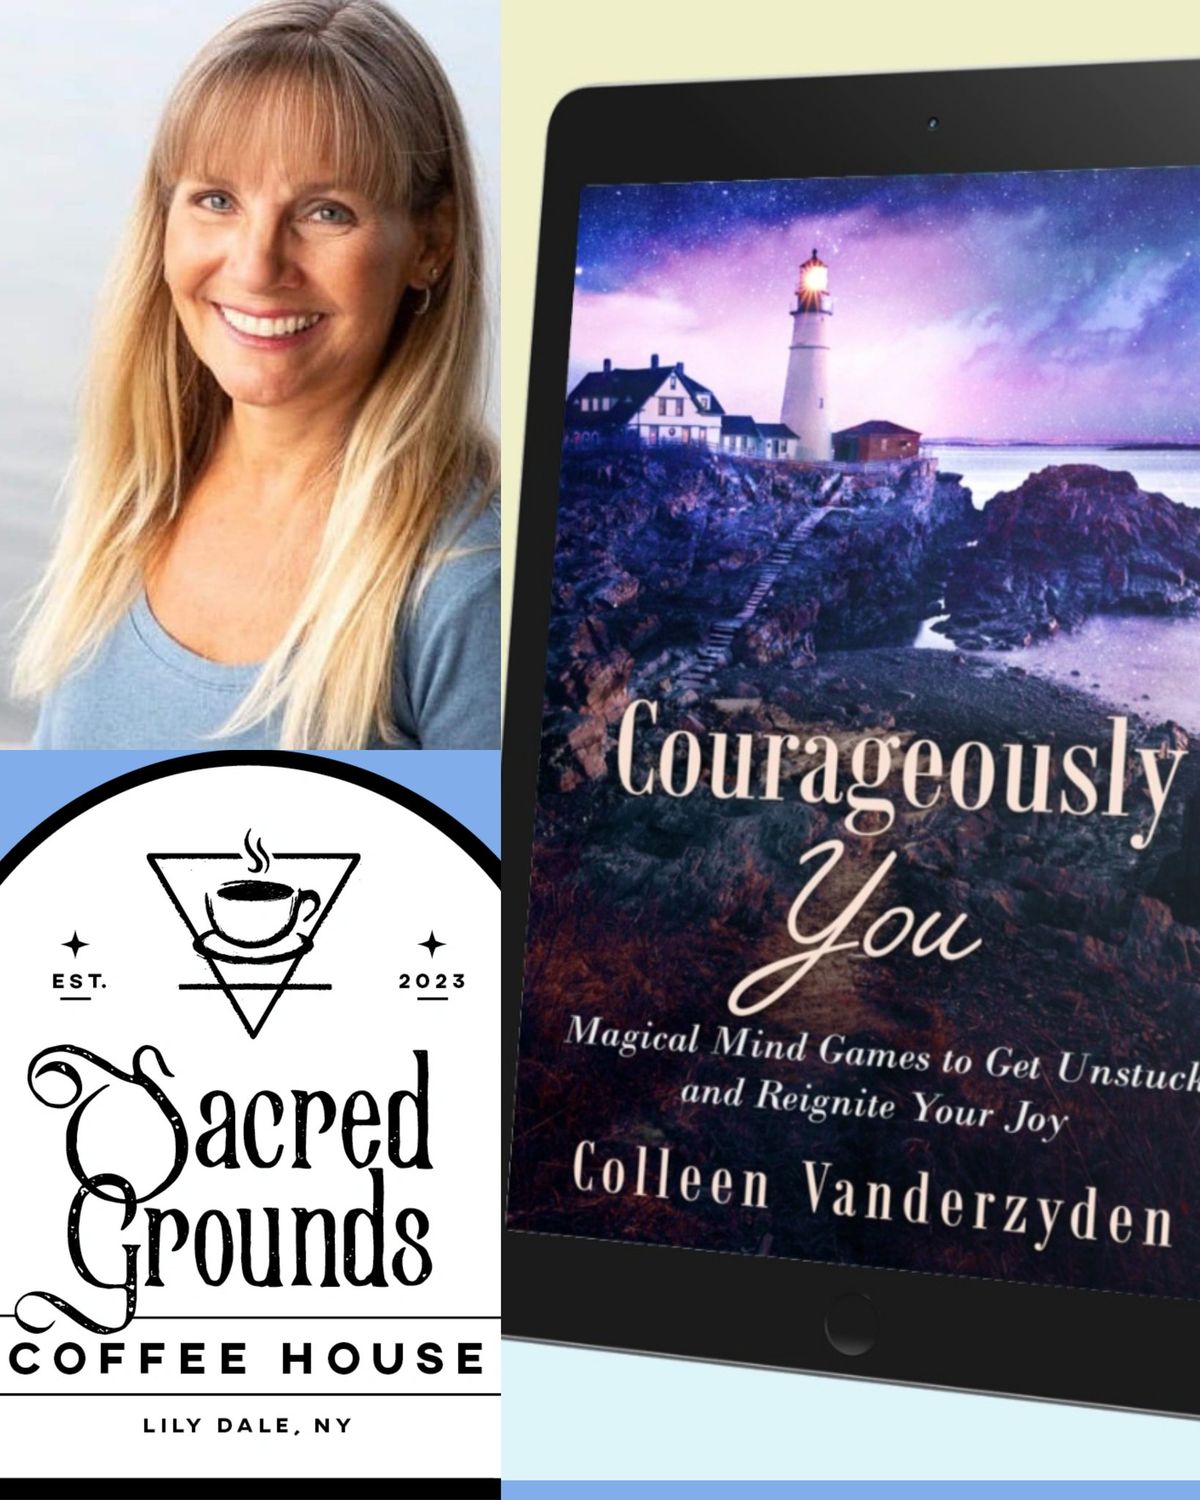 Meet the Author Colleen Vanderzyden